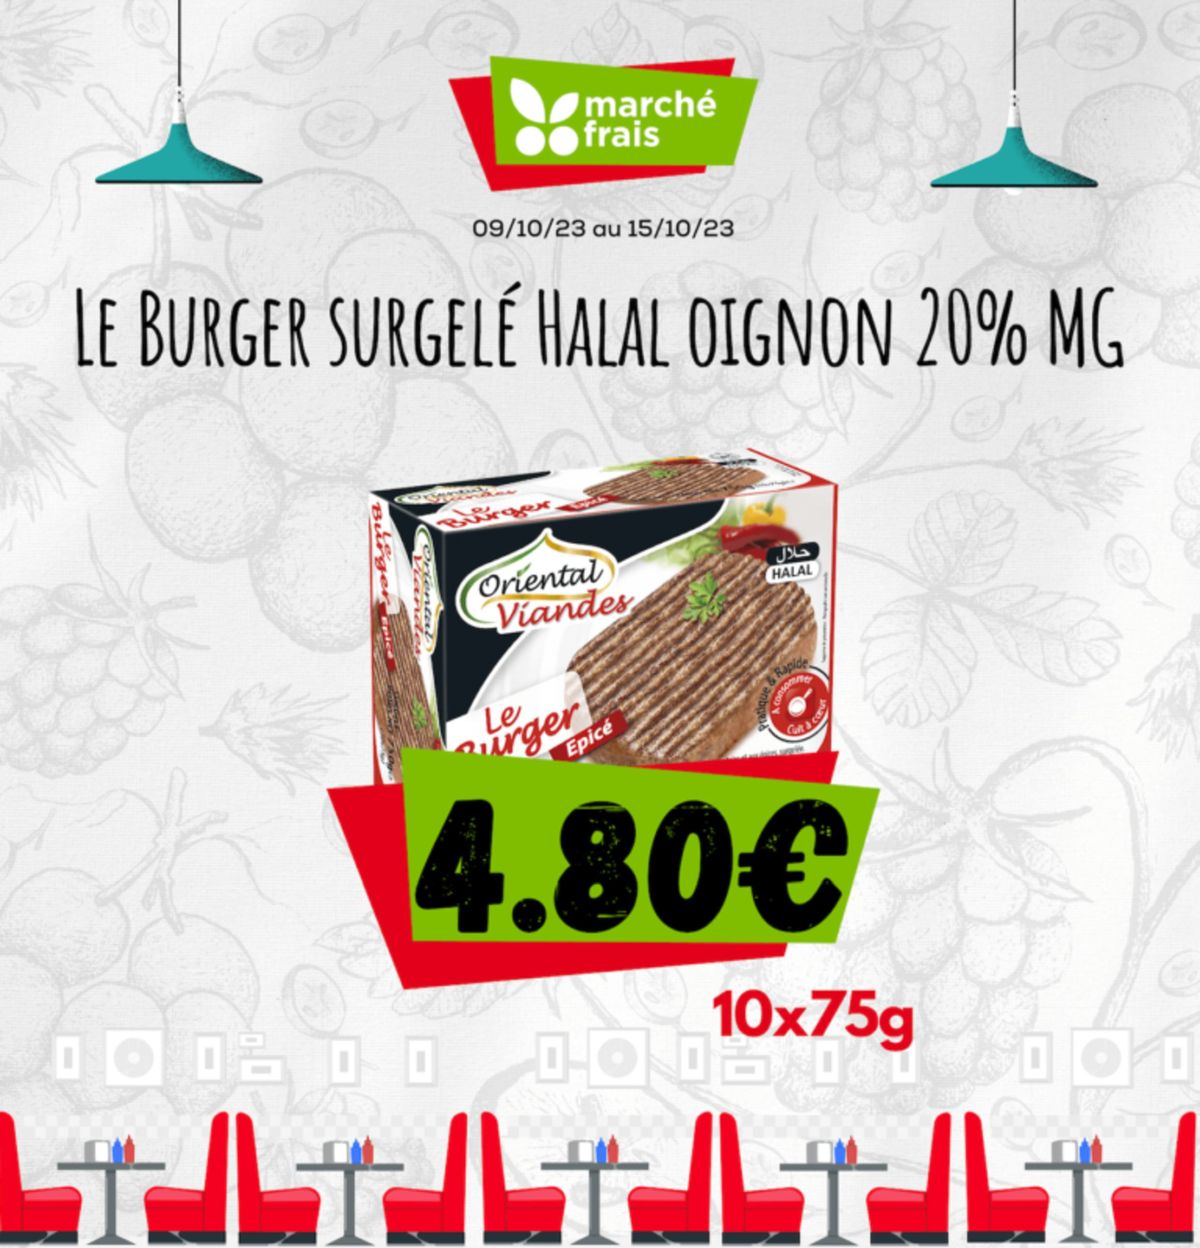 Catalogue Le burger surgelé halal oignon 20% mg, page 00002